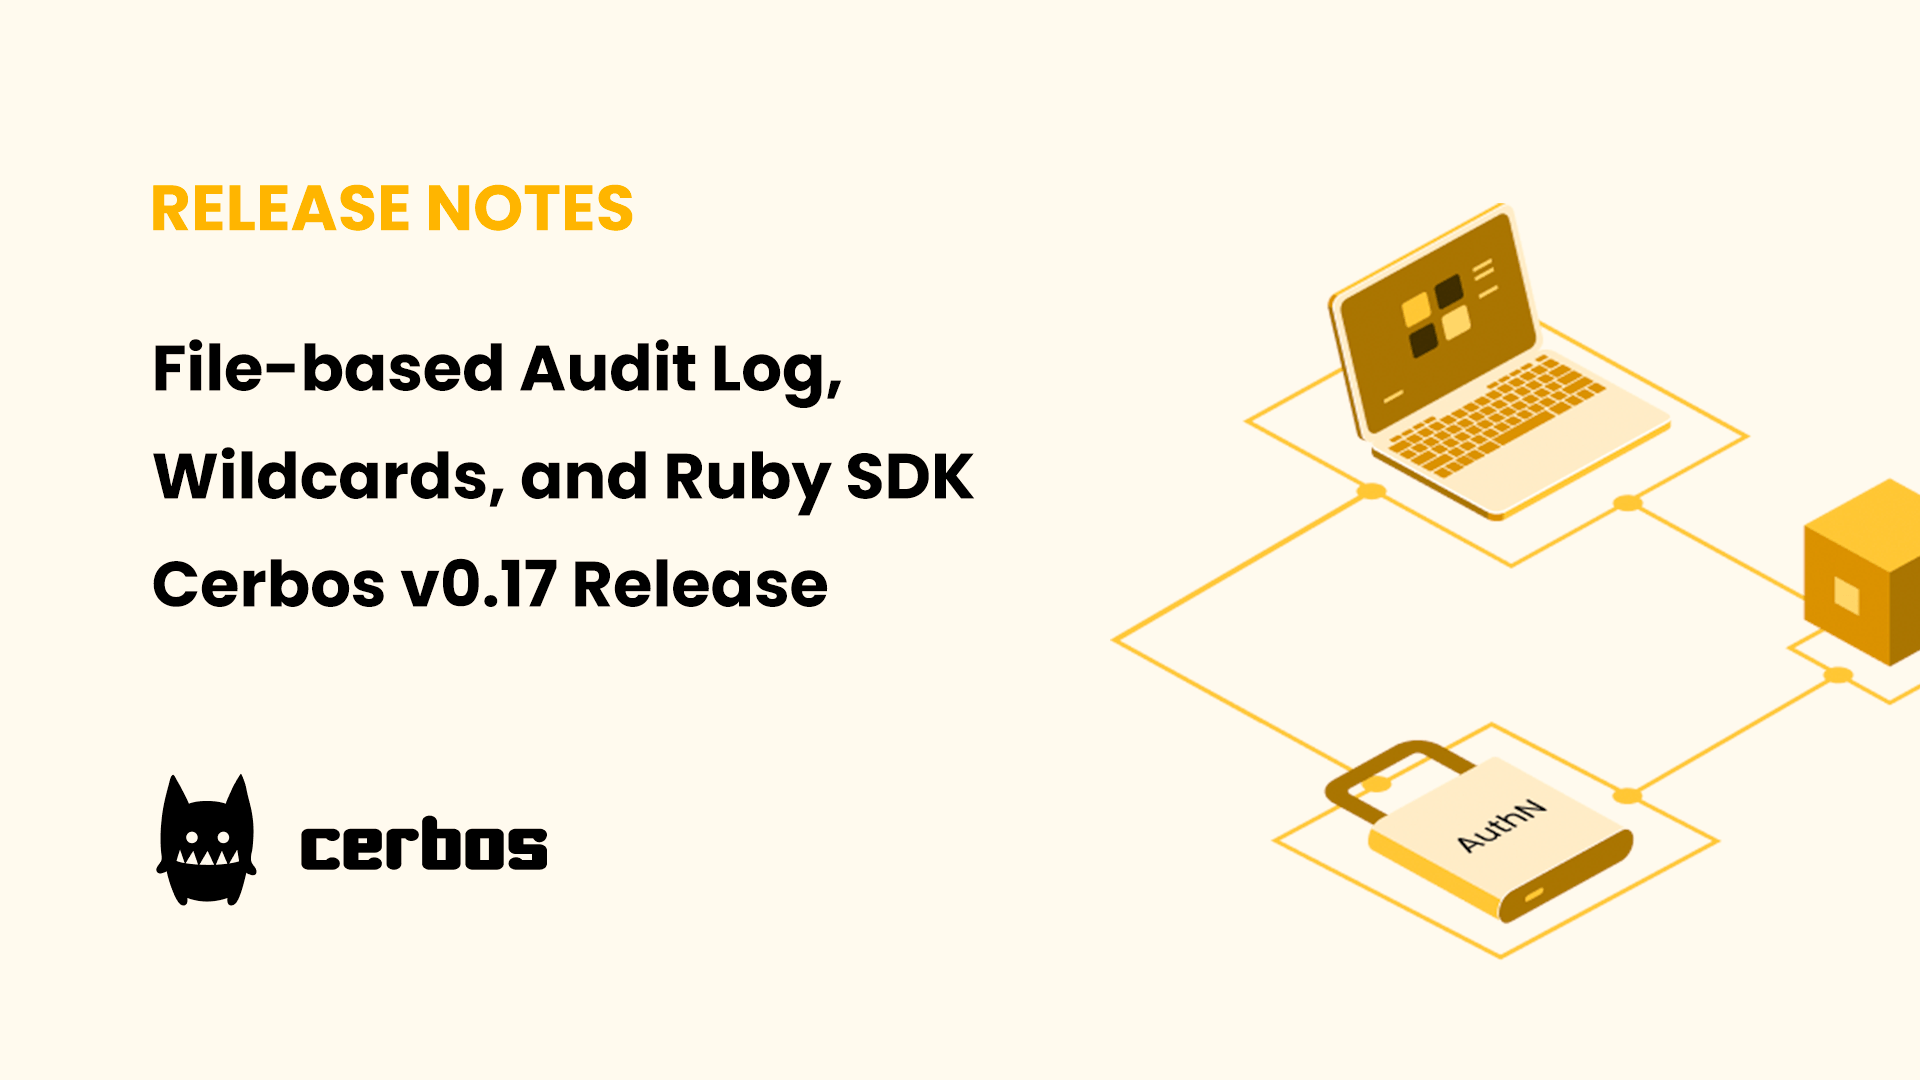 File-based Audit Log, Wildcards, and Ruby SDK - Cerbos v0.17 Release